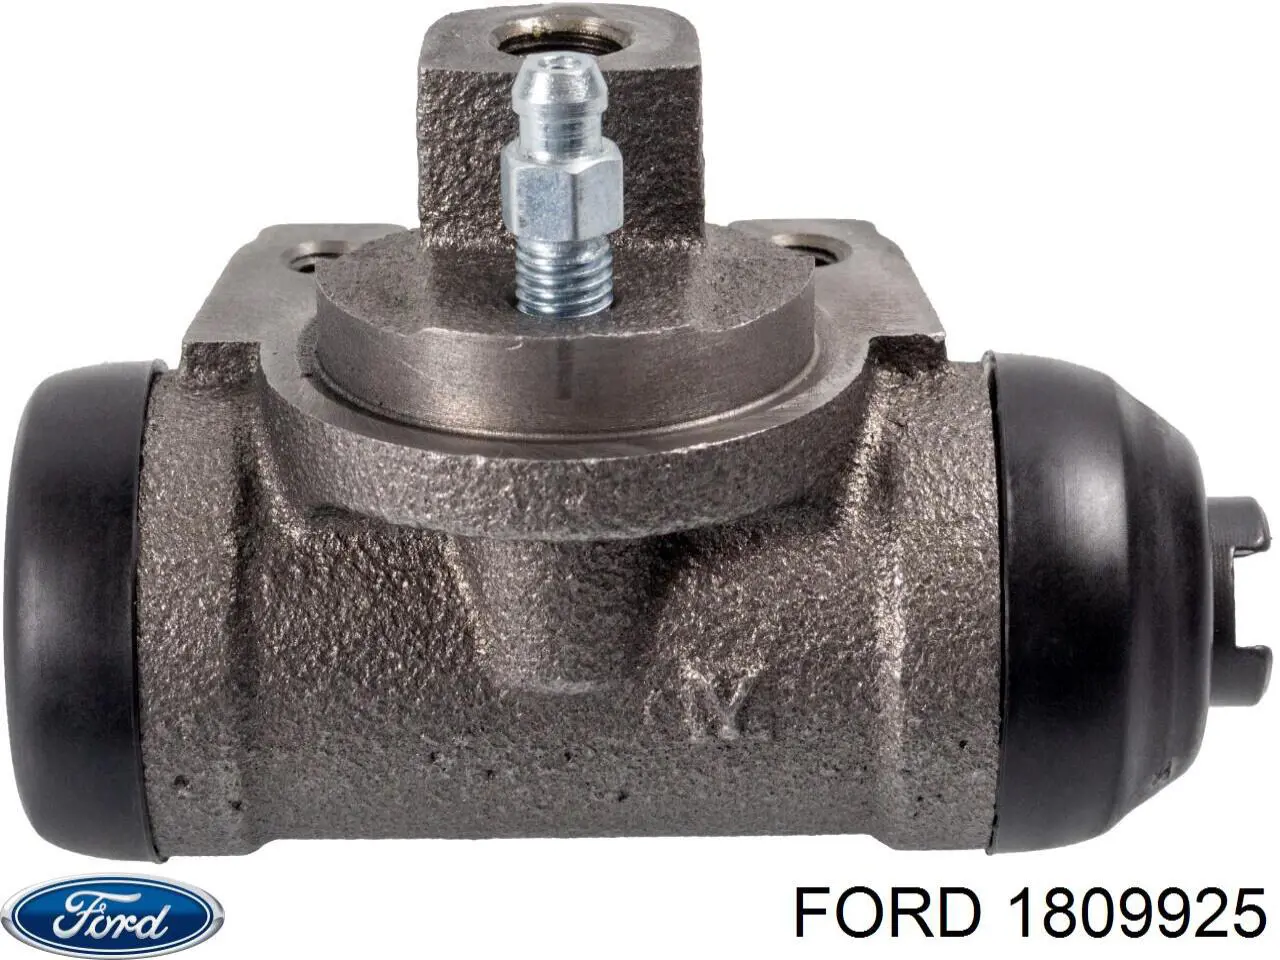 1809925 Ford cilindro de freno de rueda trasero